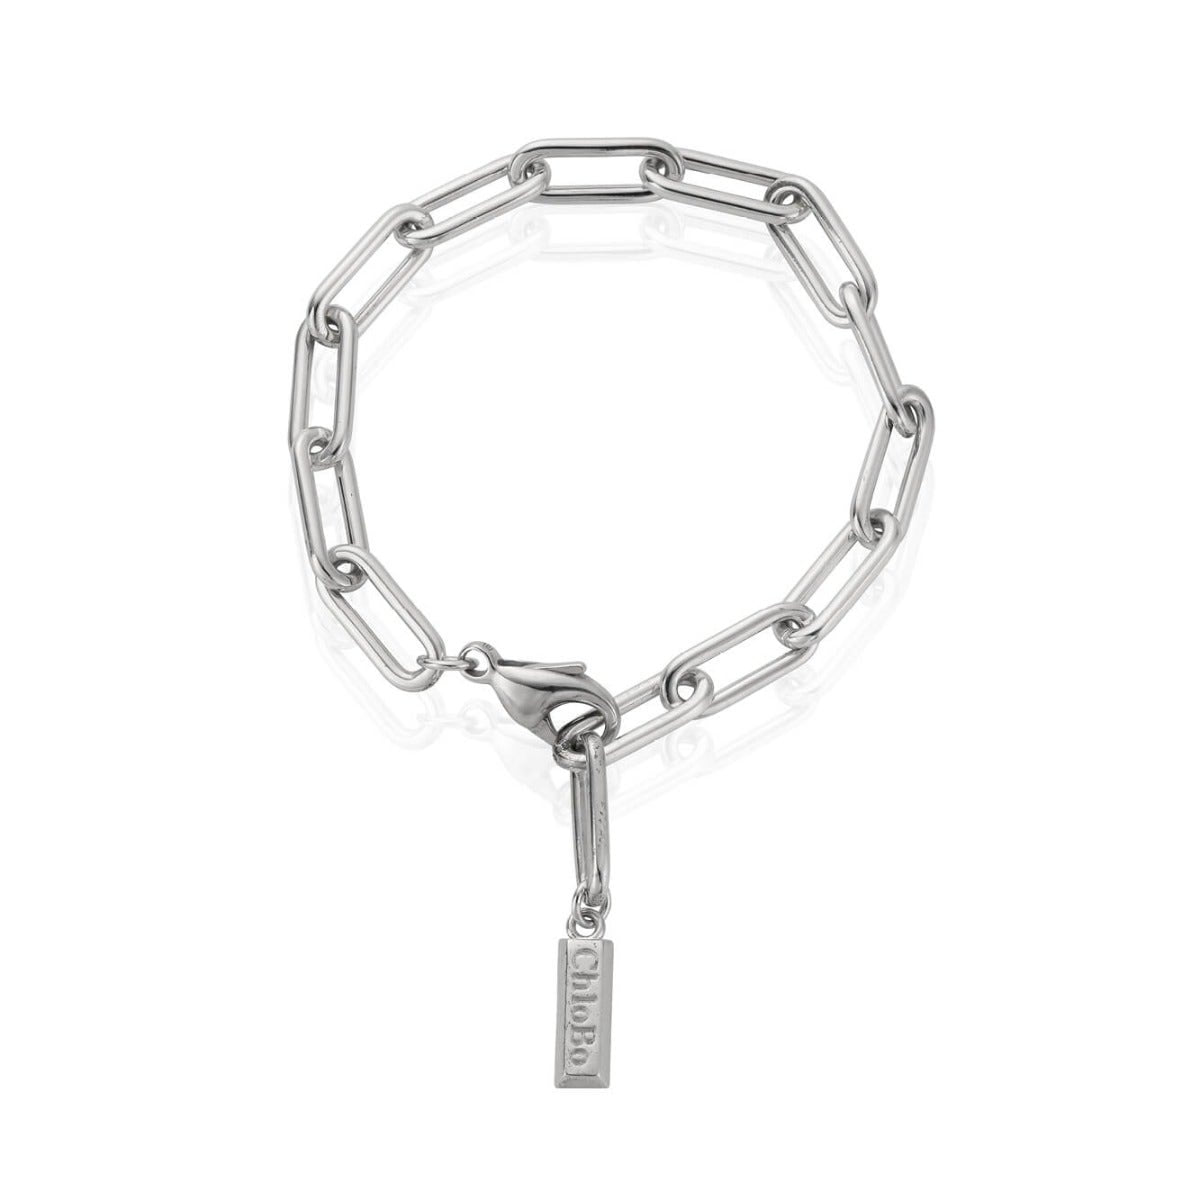 Medium Chain Link Bracelet | UK Made | ChloBo